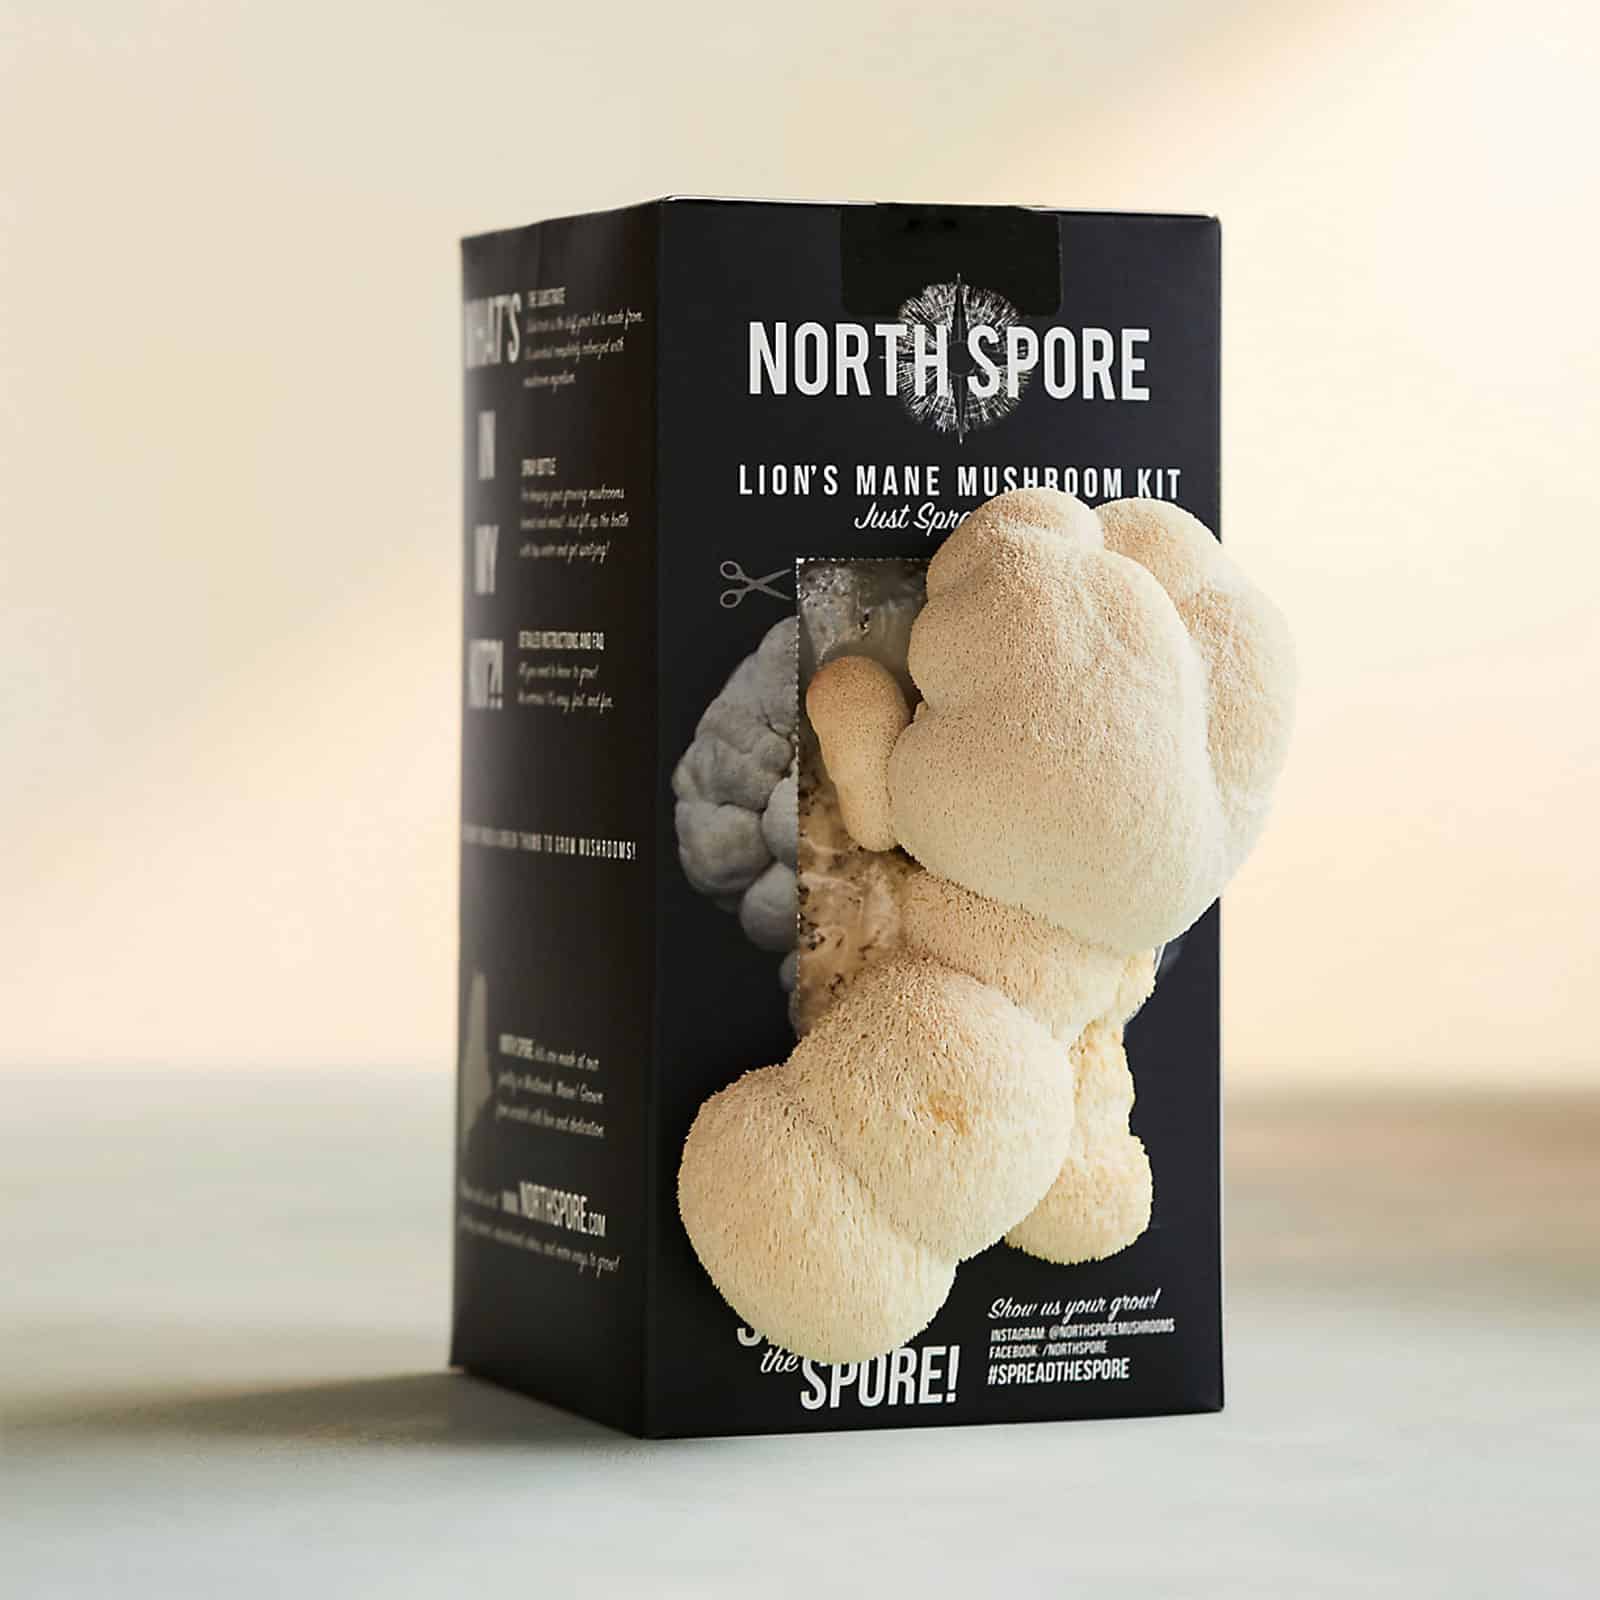 North Spore lion's mane mushroom kit